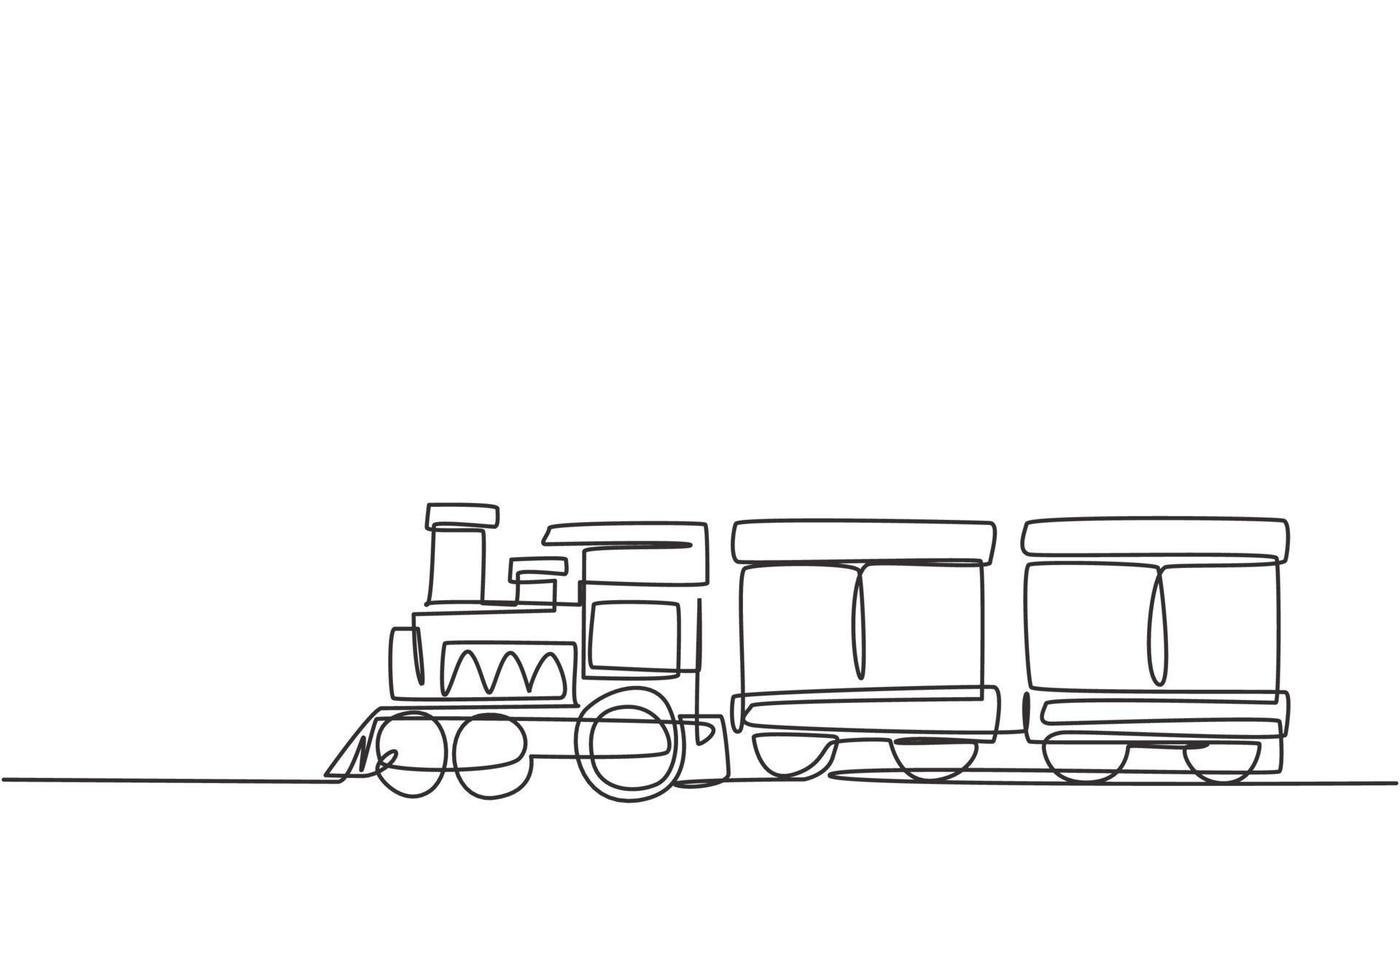 disegno a una linea di una locomotiva del treno con due carrozze a forma di sistema a vapore itinerante nel parco divertimenti per il trasporto di passeggeri. illustrazione vettoriale grafica di disegno di disegno di linea continua